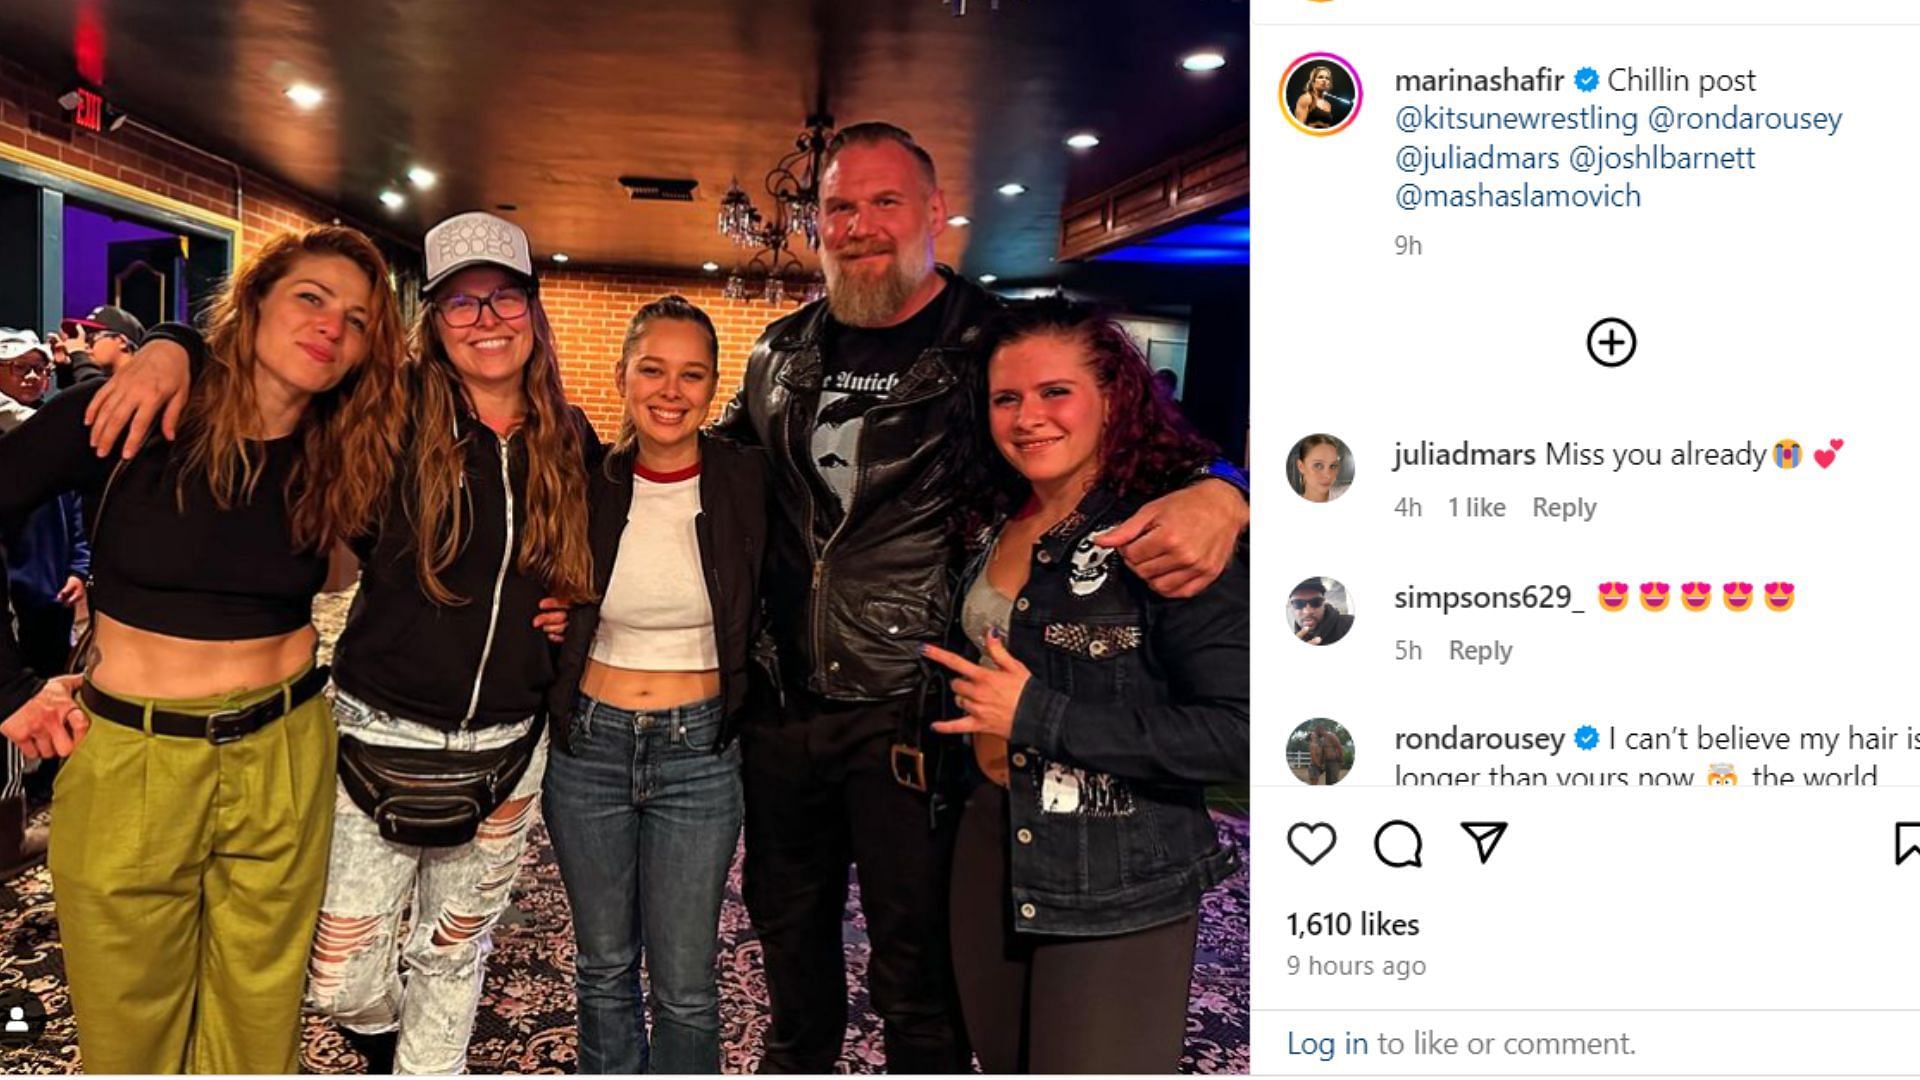 Marina Shafir shared a photo with Ronda Rousey